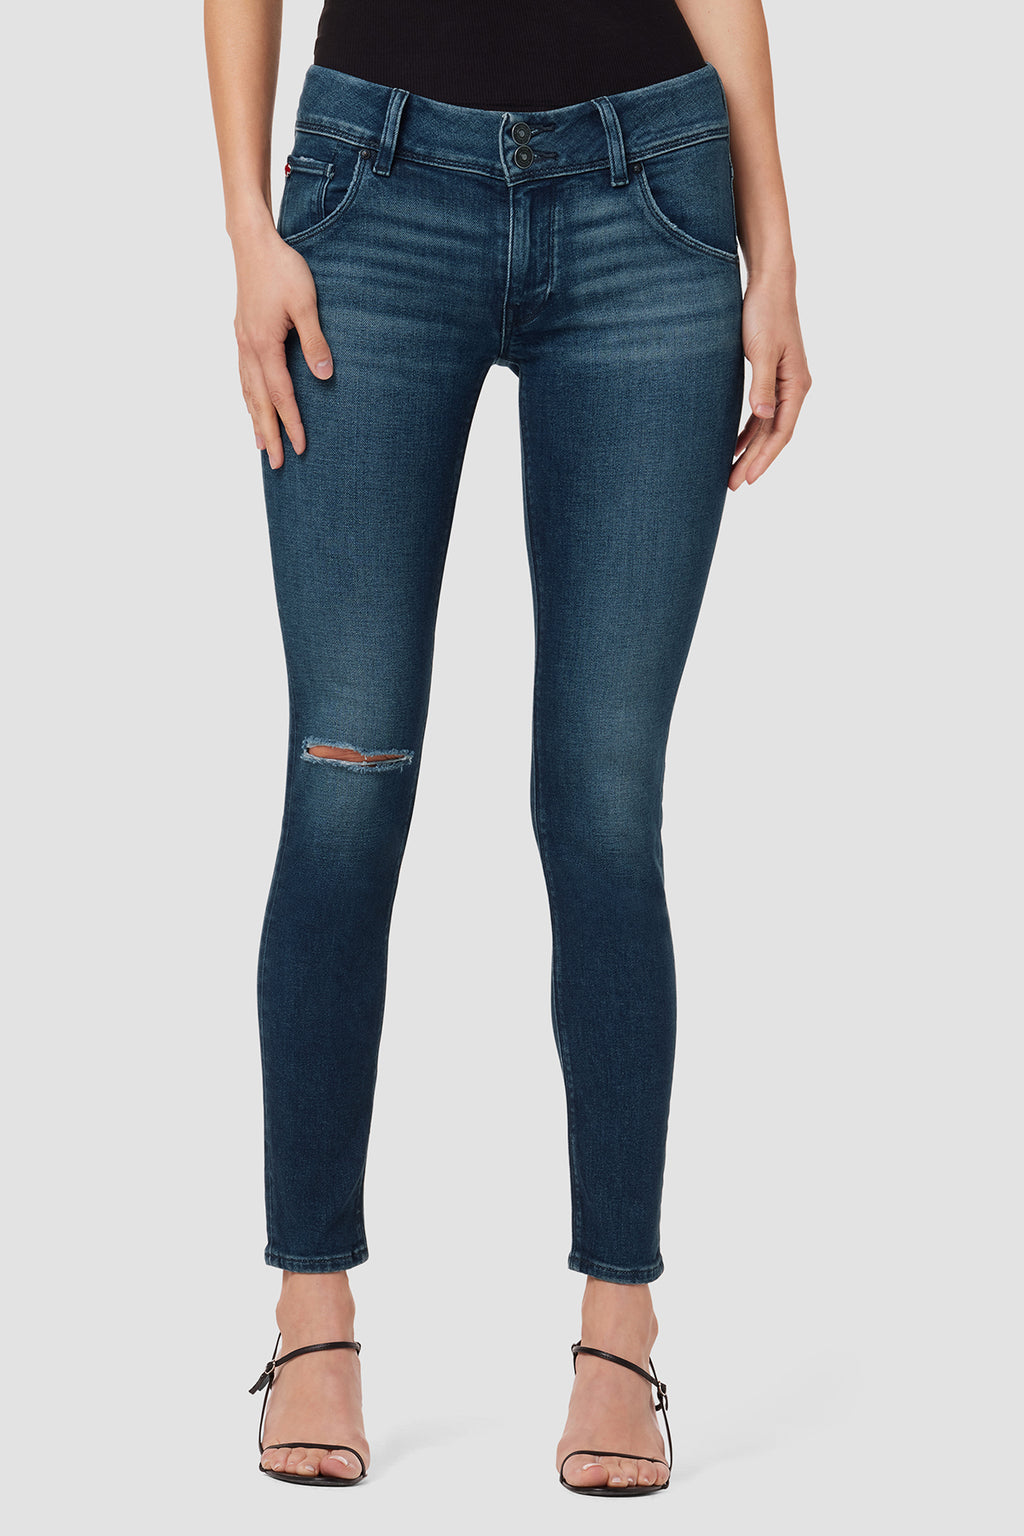 Shop Flap Pocket at Hudson Jeans